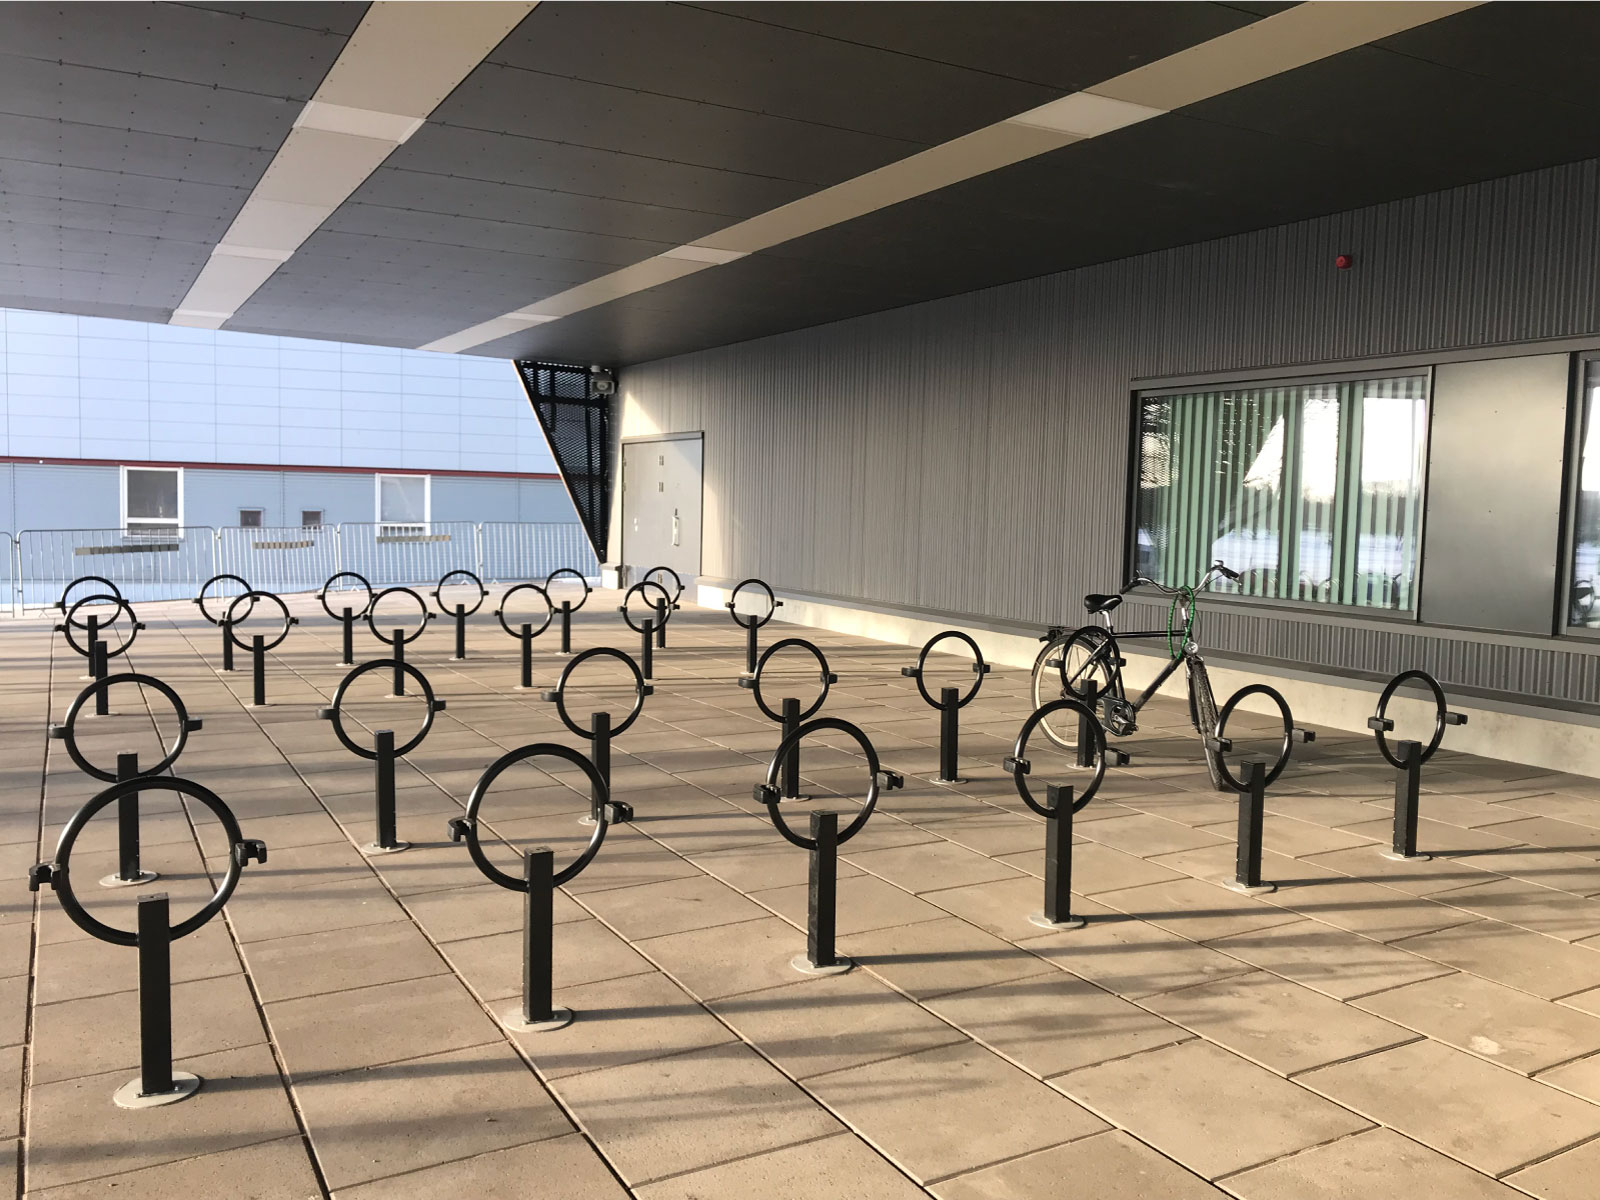 Cyklos pyöräteline OMEGA pidikkeellä Turussa, Kupittaan palloiluhallin ulkopuolella on asennettu 60 kappaletta